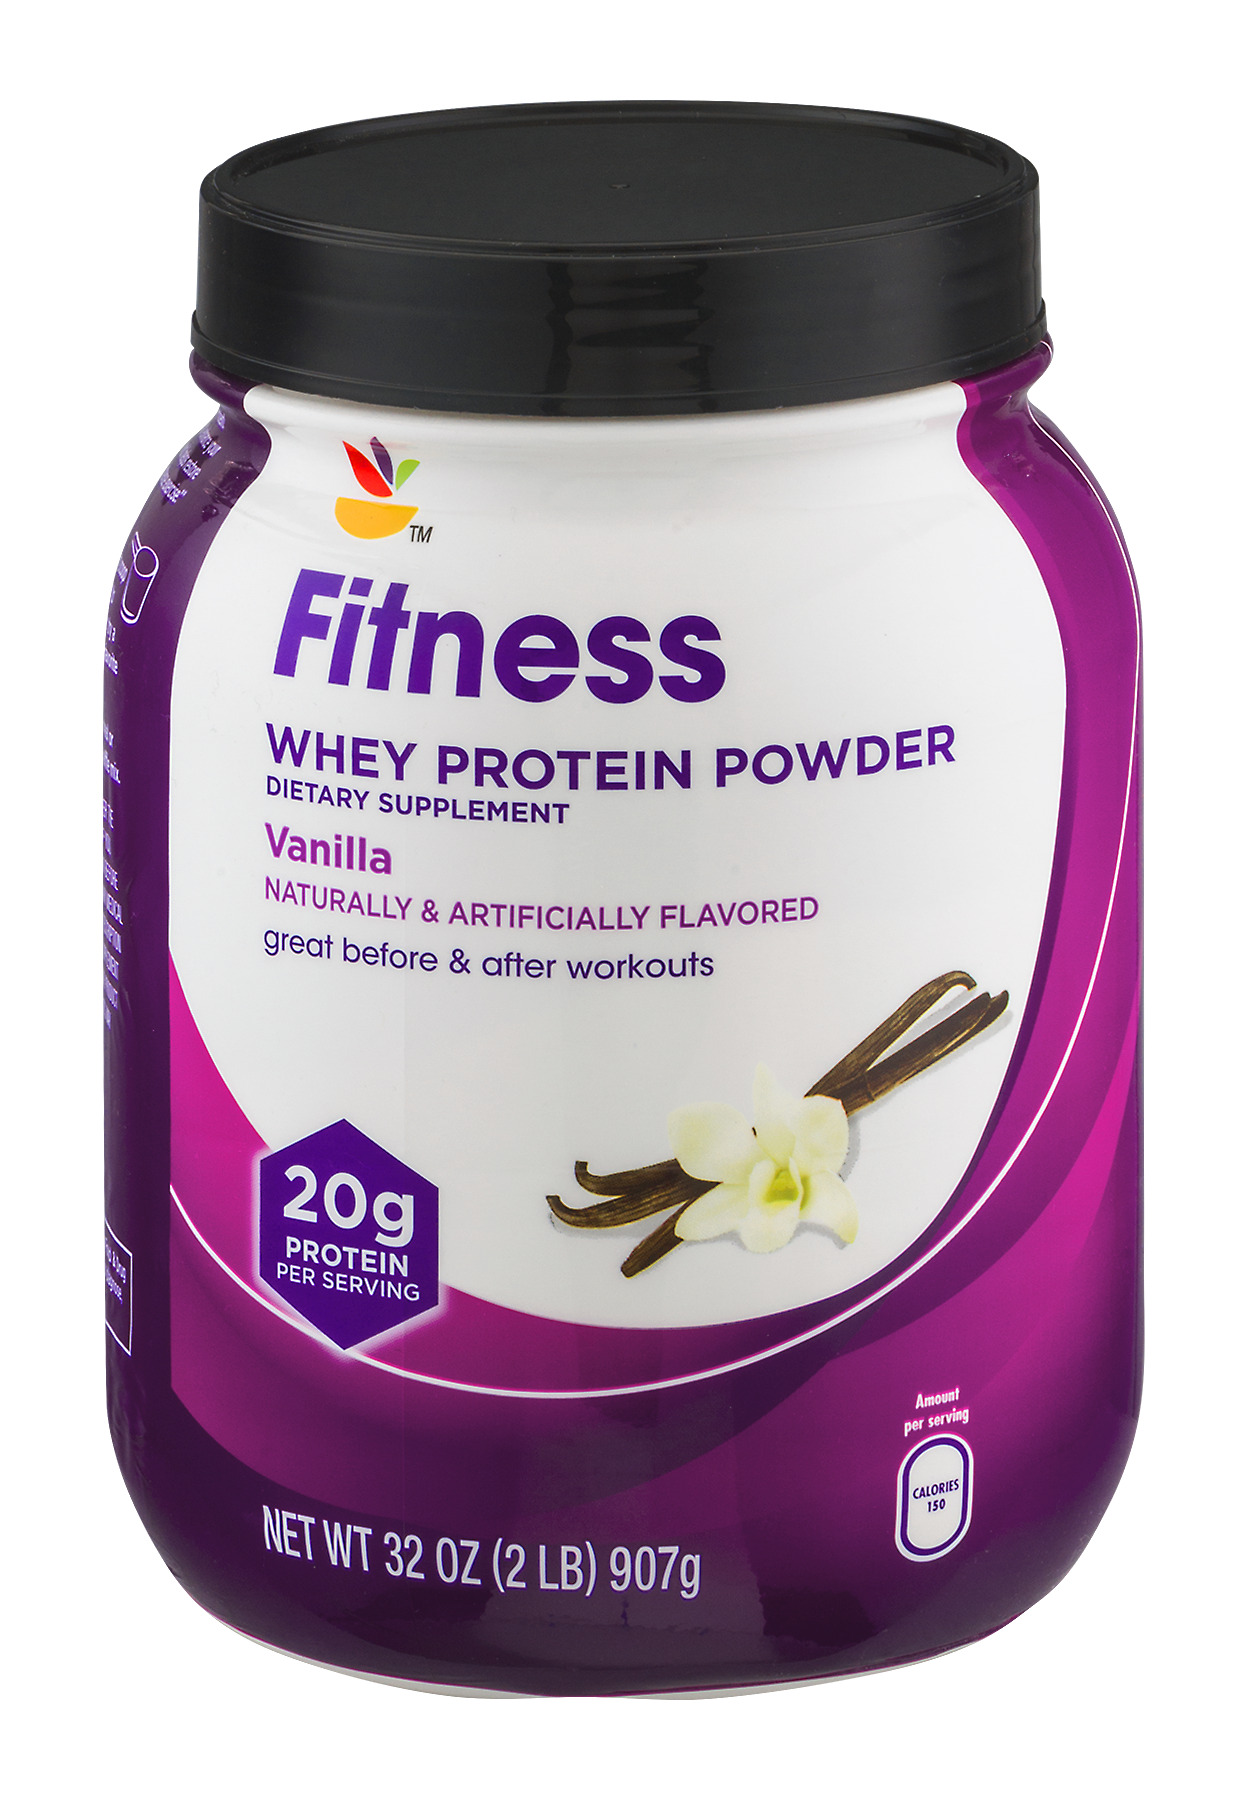 fish protein powder brands